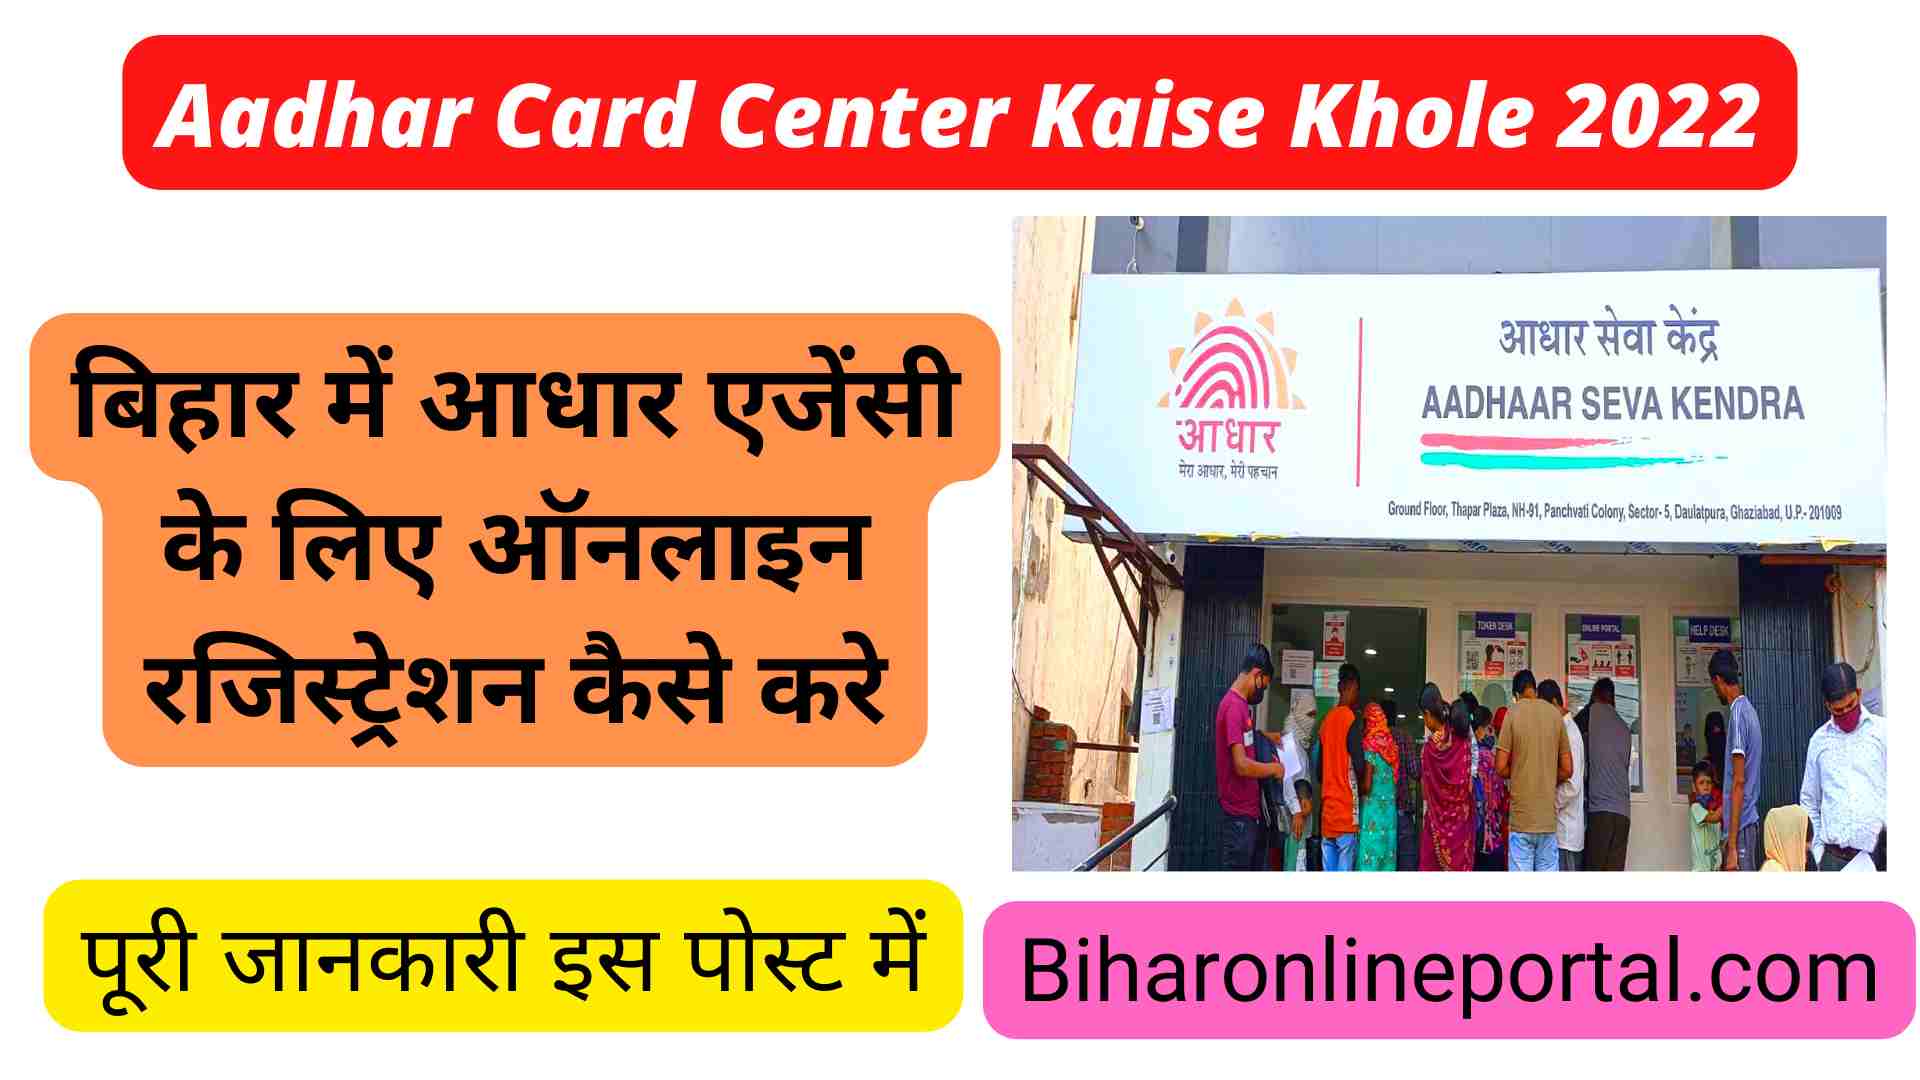 Aadhar Card Center Kaise Khole